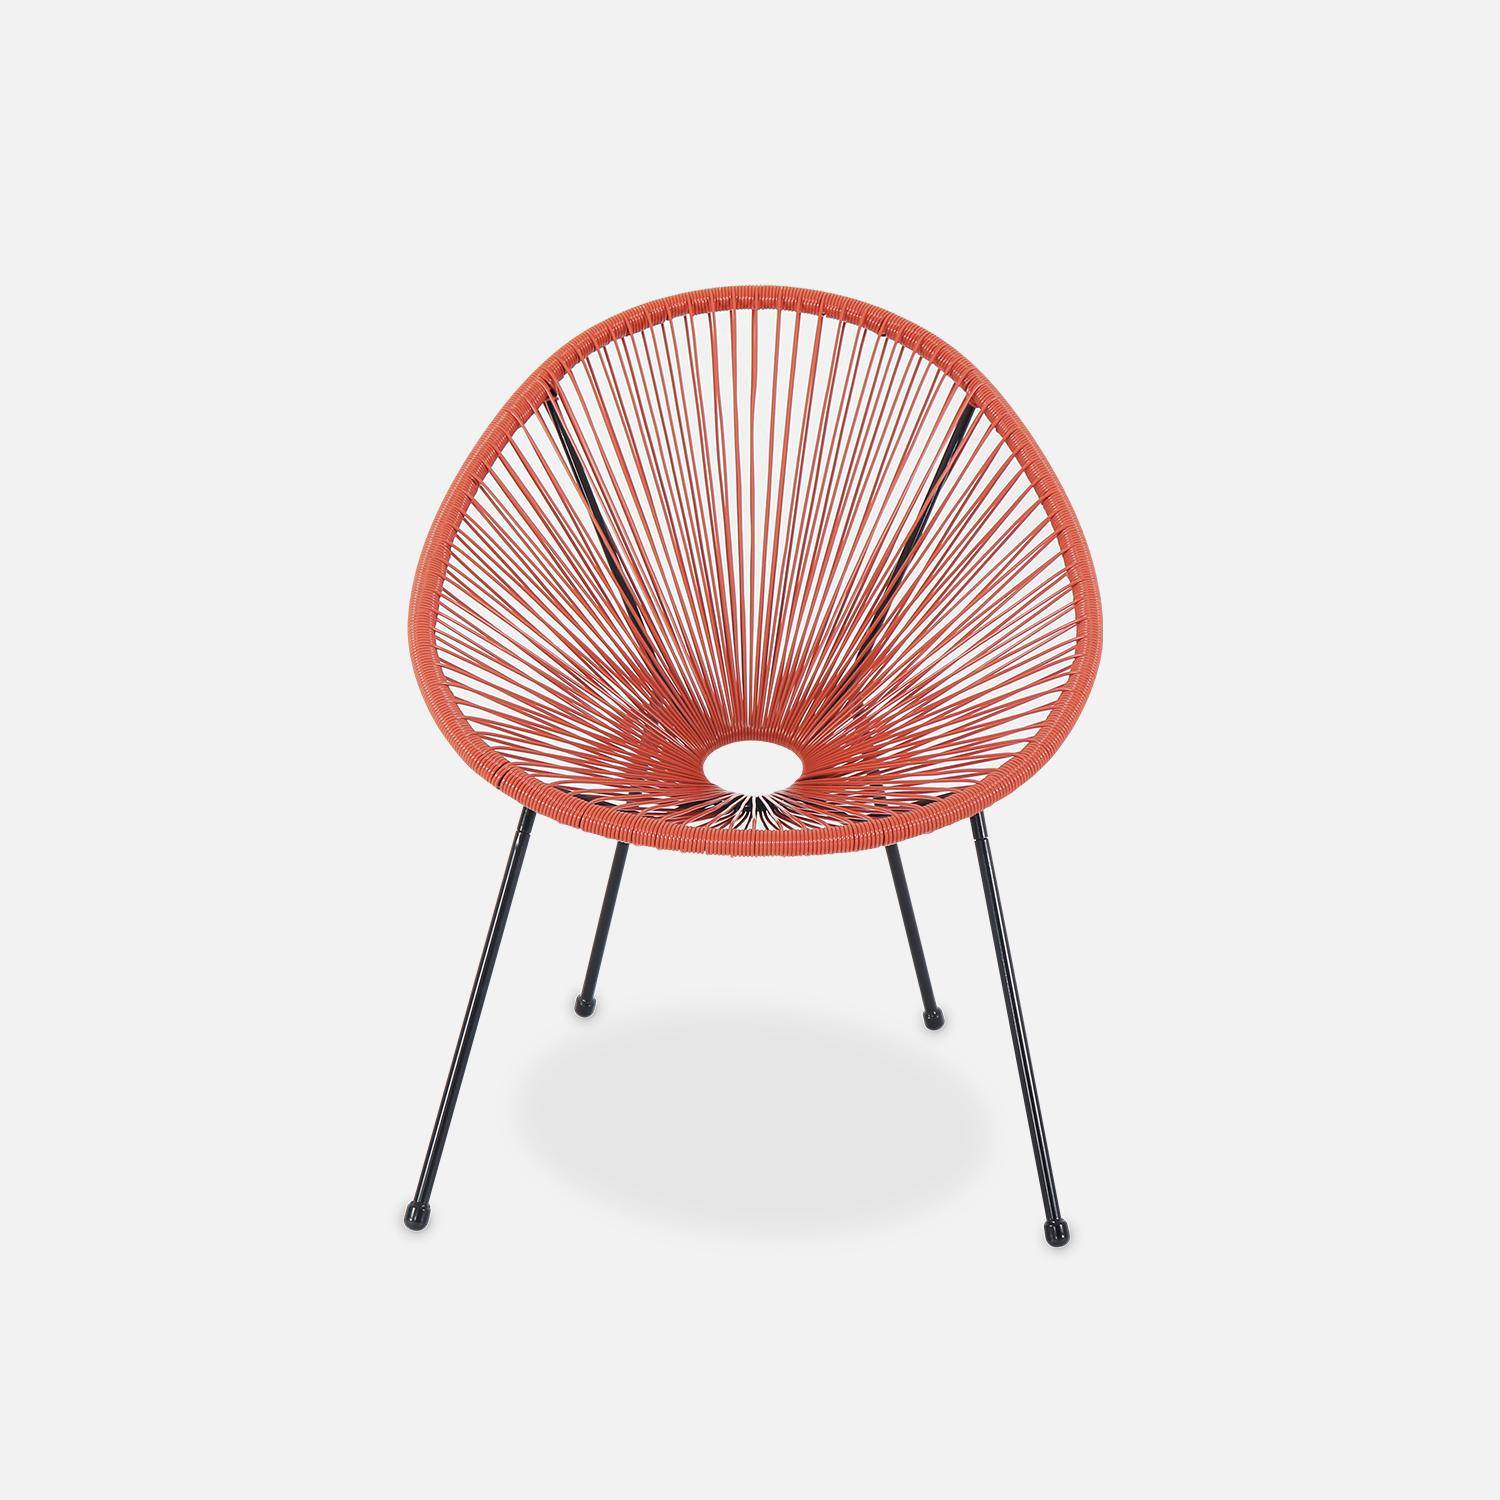 ACAPULCO stoel ei-vormig -Terra Cotta- Stoel 4 poten retro design, plastic koorden, binnen/buiten Photo3